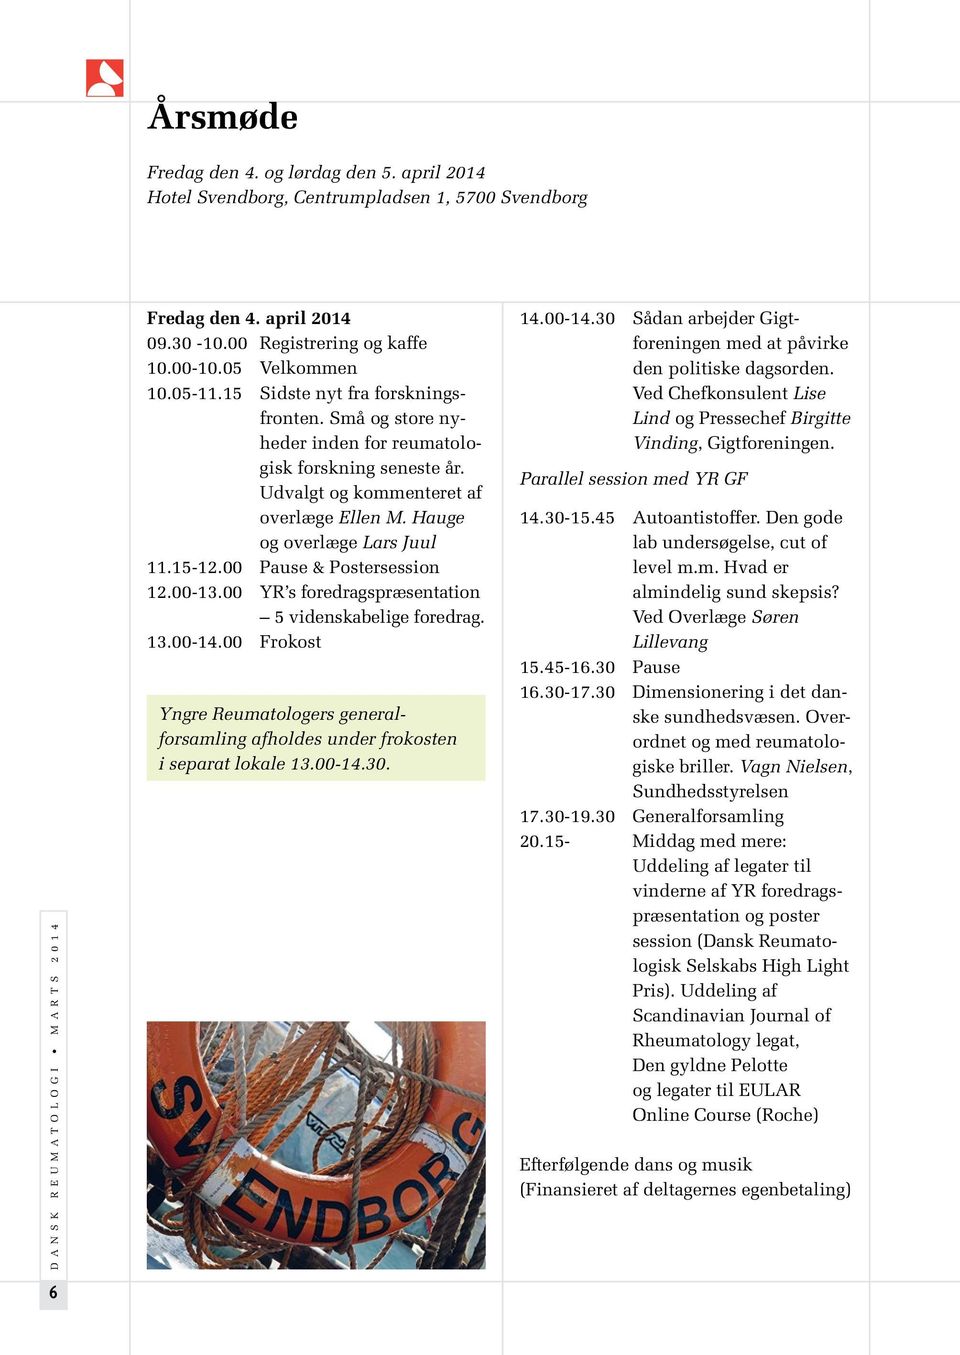 Udvalgt og kommenteret af overlæge Ellen M. Hauge og overlæge Lars Juul 11.15-12.00 Pause & Postersession 12.00-13.00 YR s foredragspræsentation 5 videnskabelige foredrag. 13.00-14.